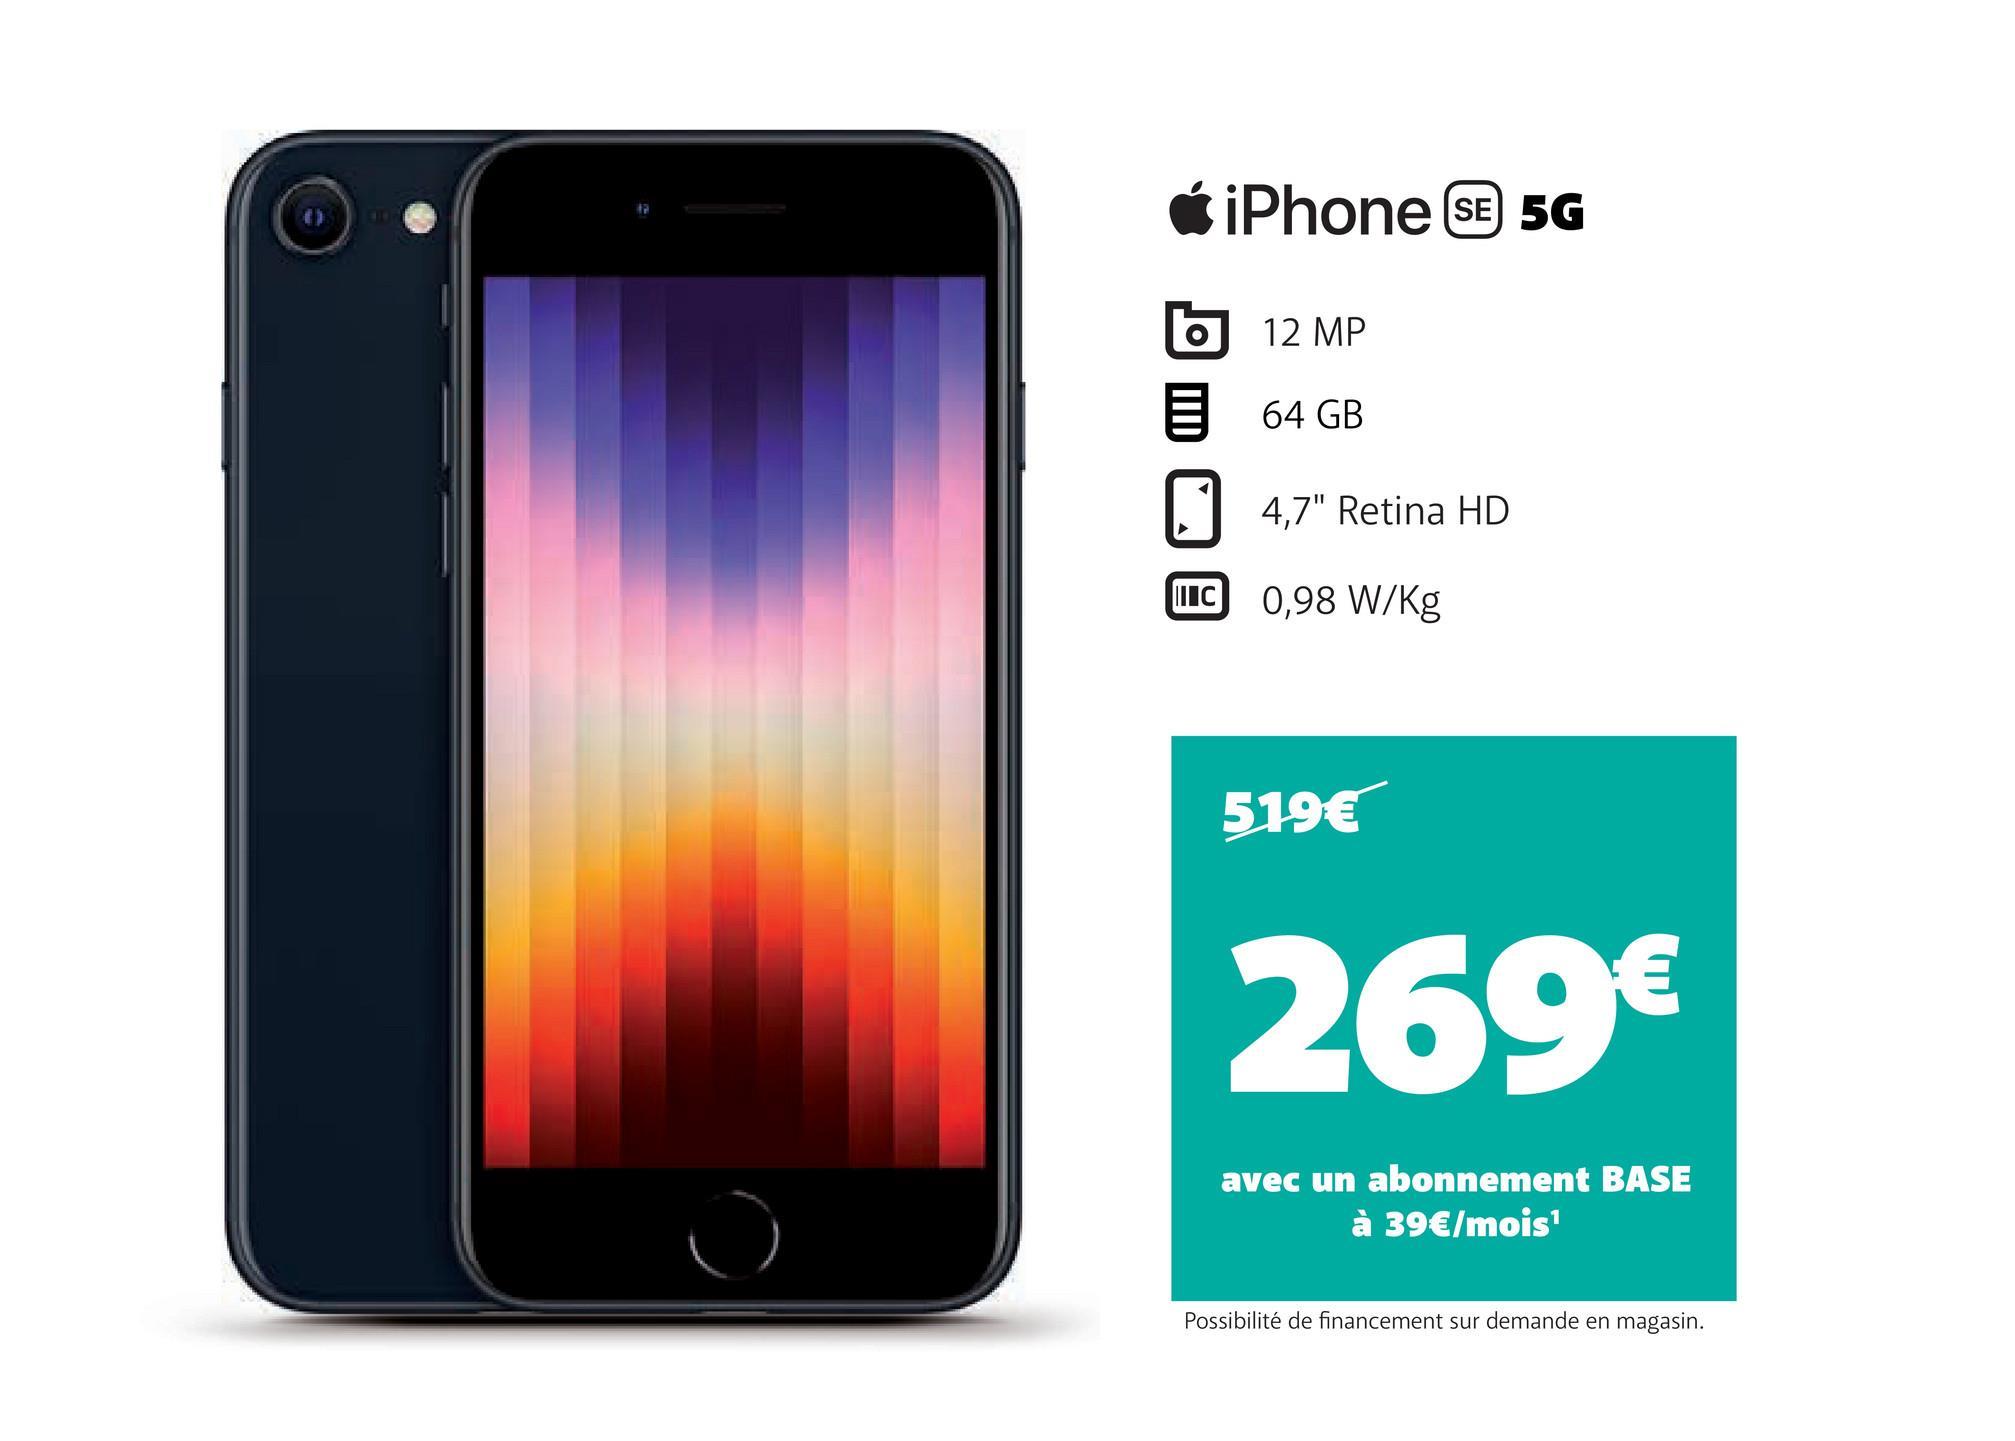 iPhone SE 5G
12 MP
64 GB
4,7" Retina HD
C 0,98 W/Kg
519€
269€
avec un abonnement BASE
à 39€/mois¹
Possibilité de financement sur demande en magasin.